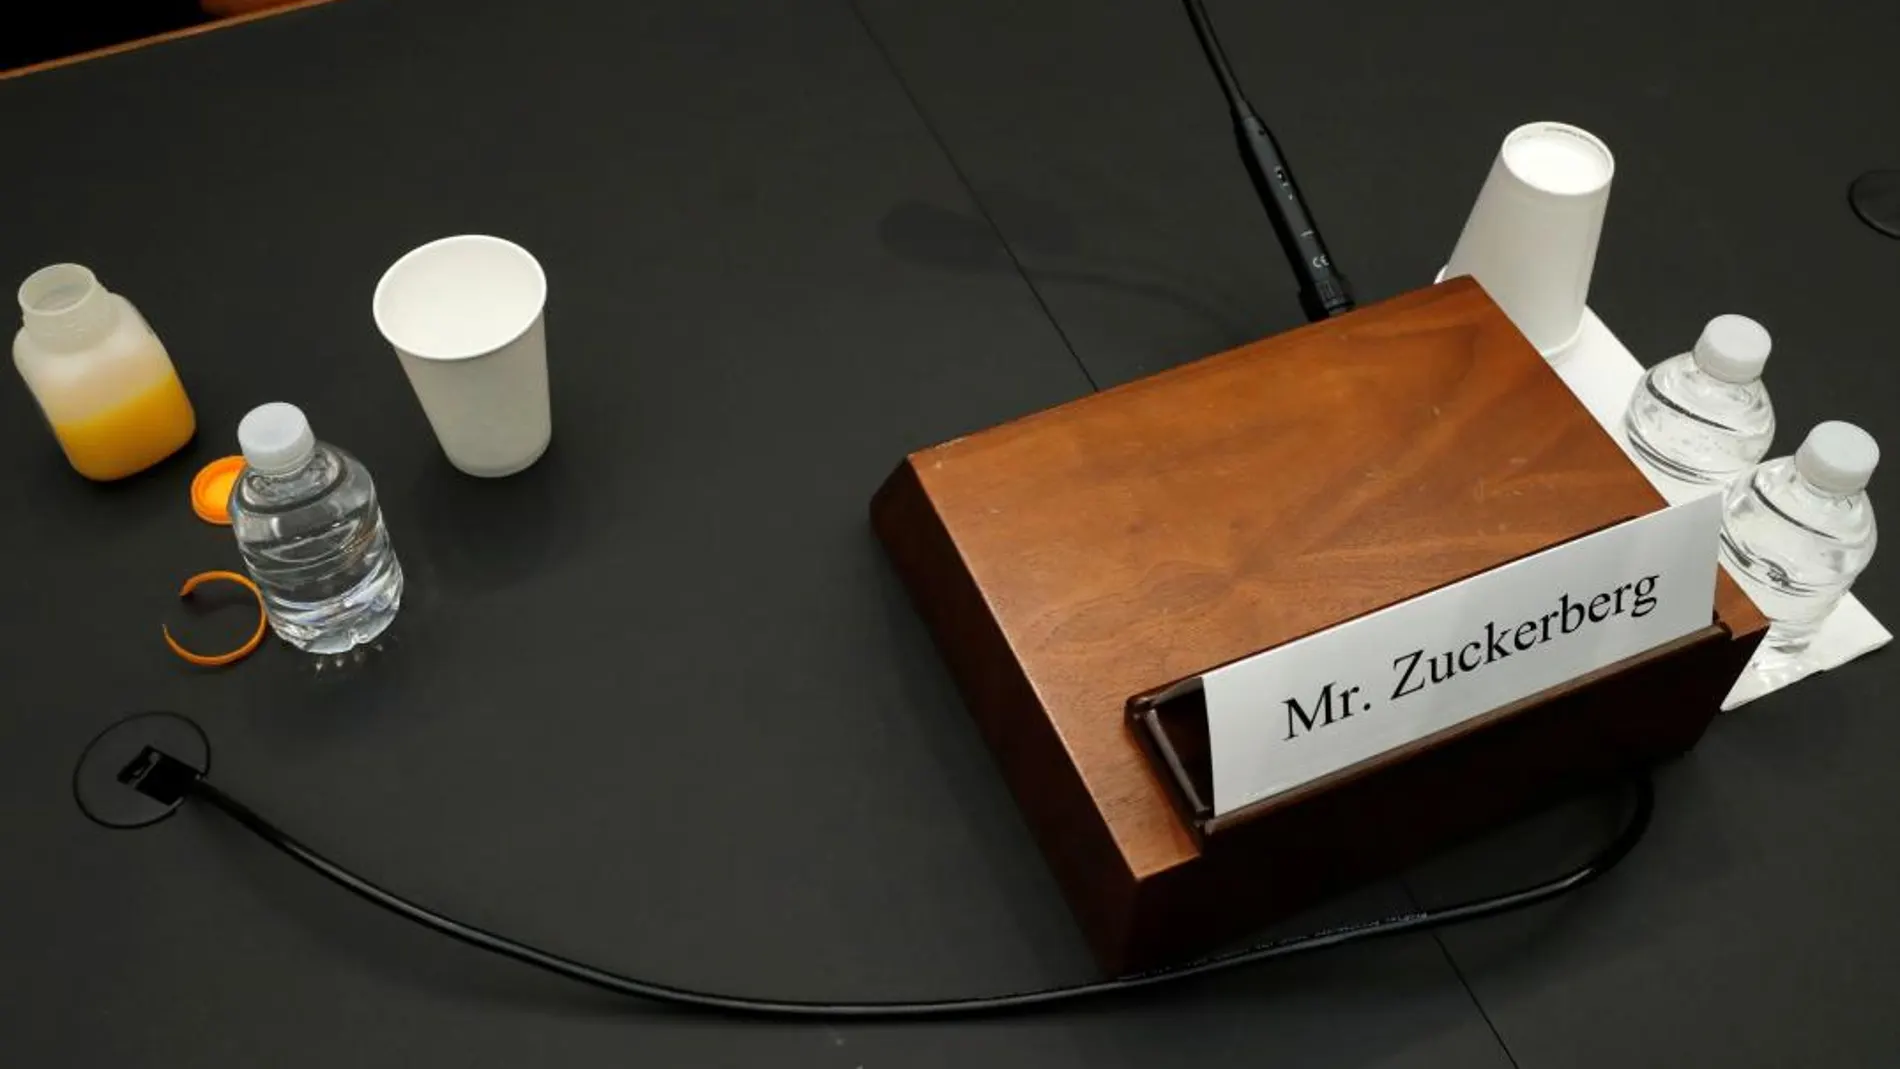 La mesa donde ha comparecido Mark Zuckerberg, en uno de los descansos